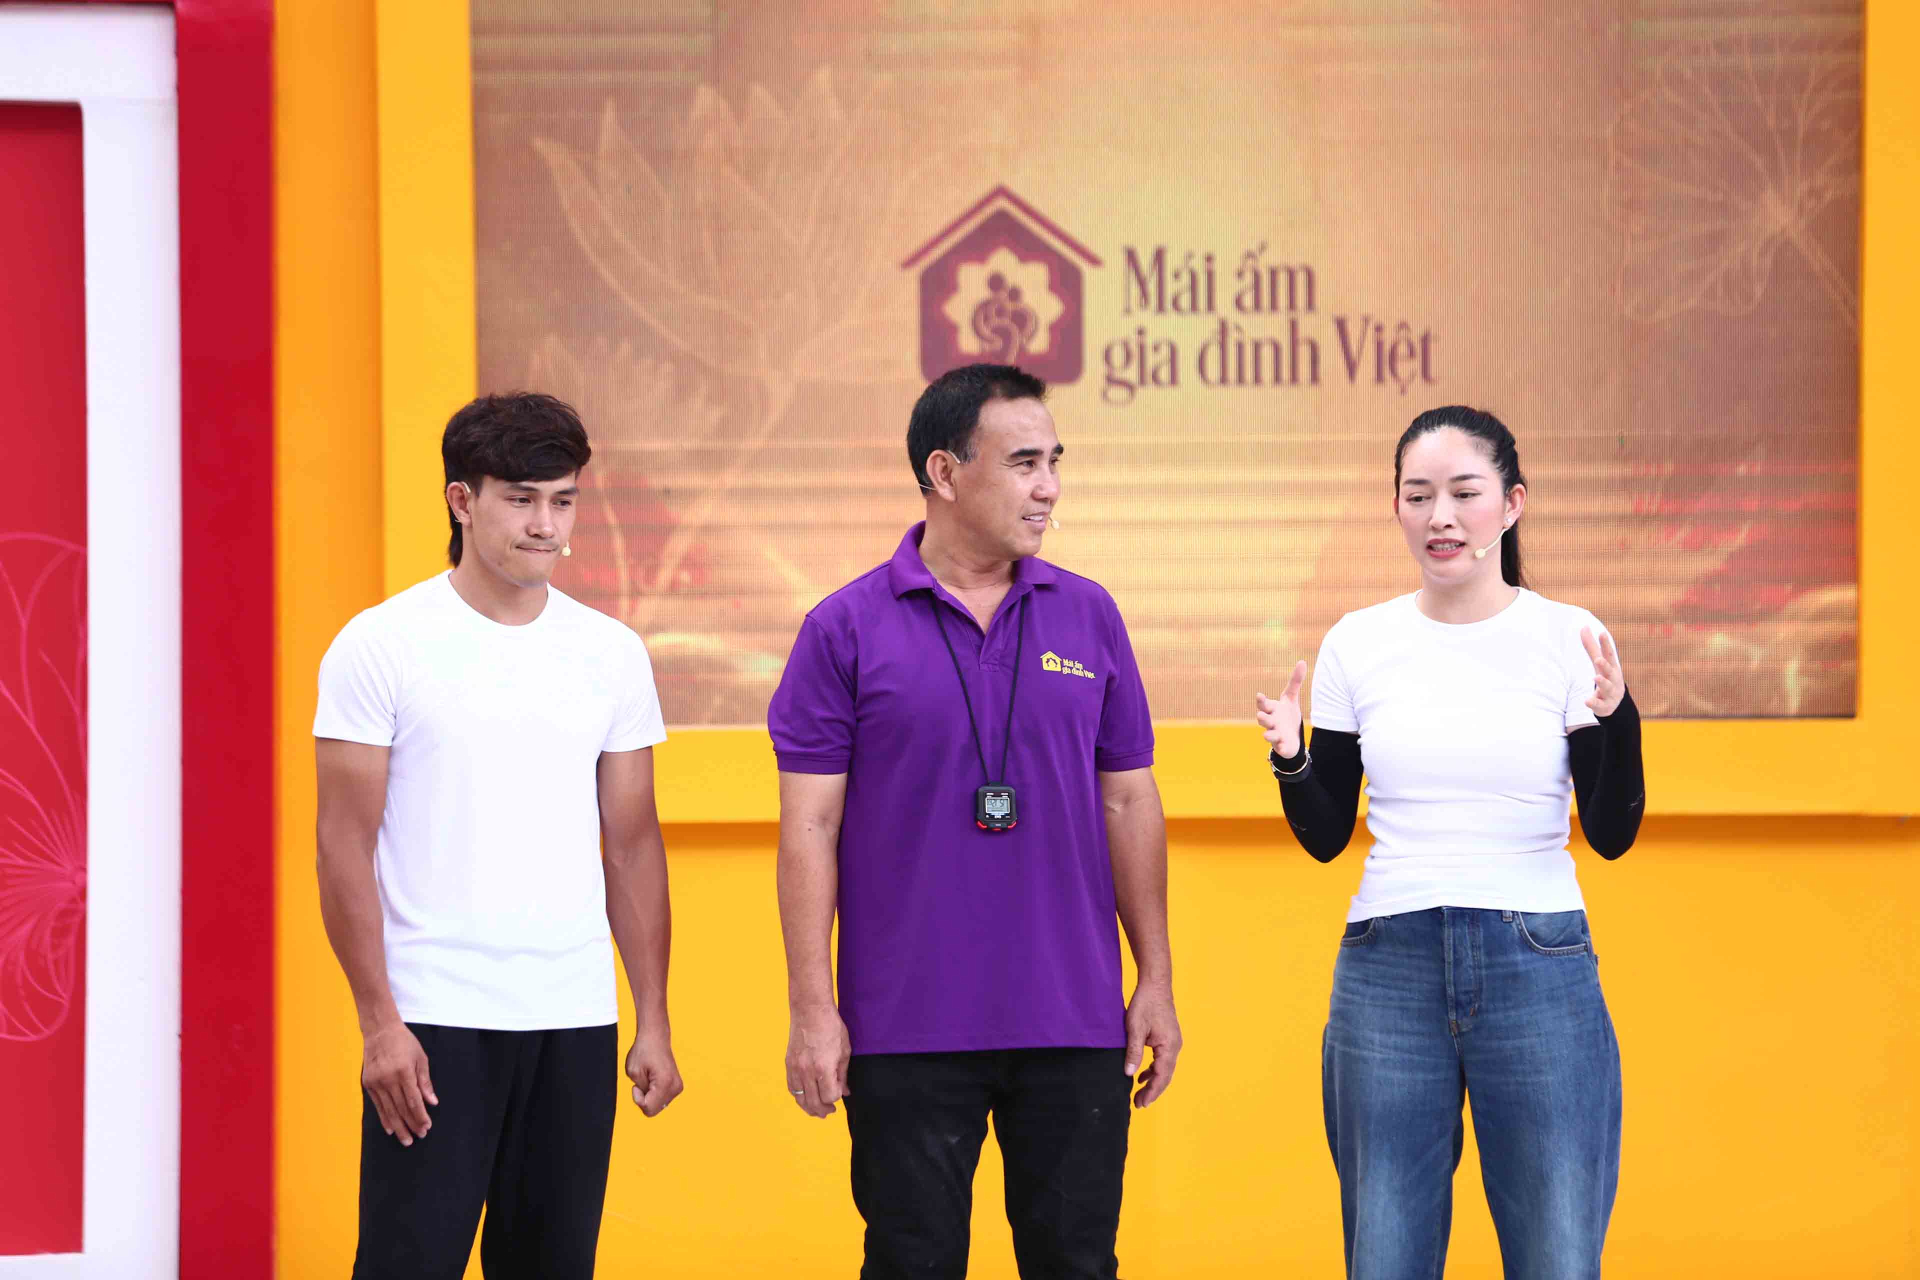 Võ sĩ Nguyễn Trần Duy Nhất cho biết anh rất hâm mộ MC Quyền Linh nên luôn theo dõi các chương trình của anh.